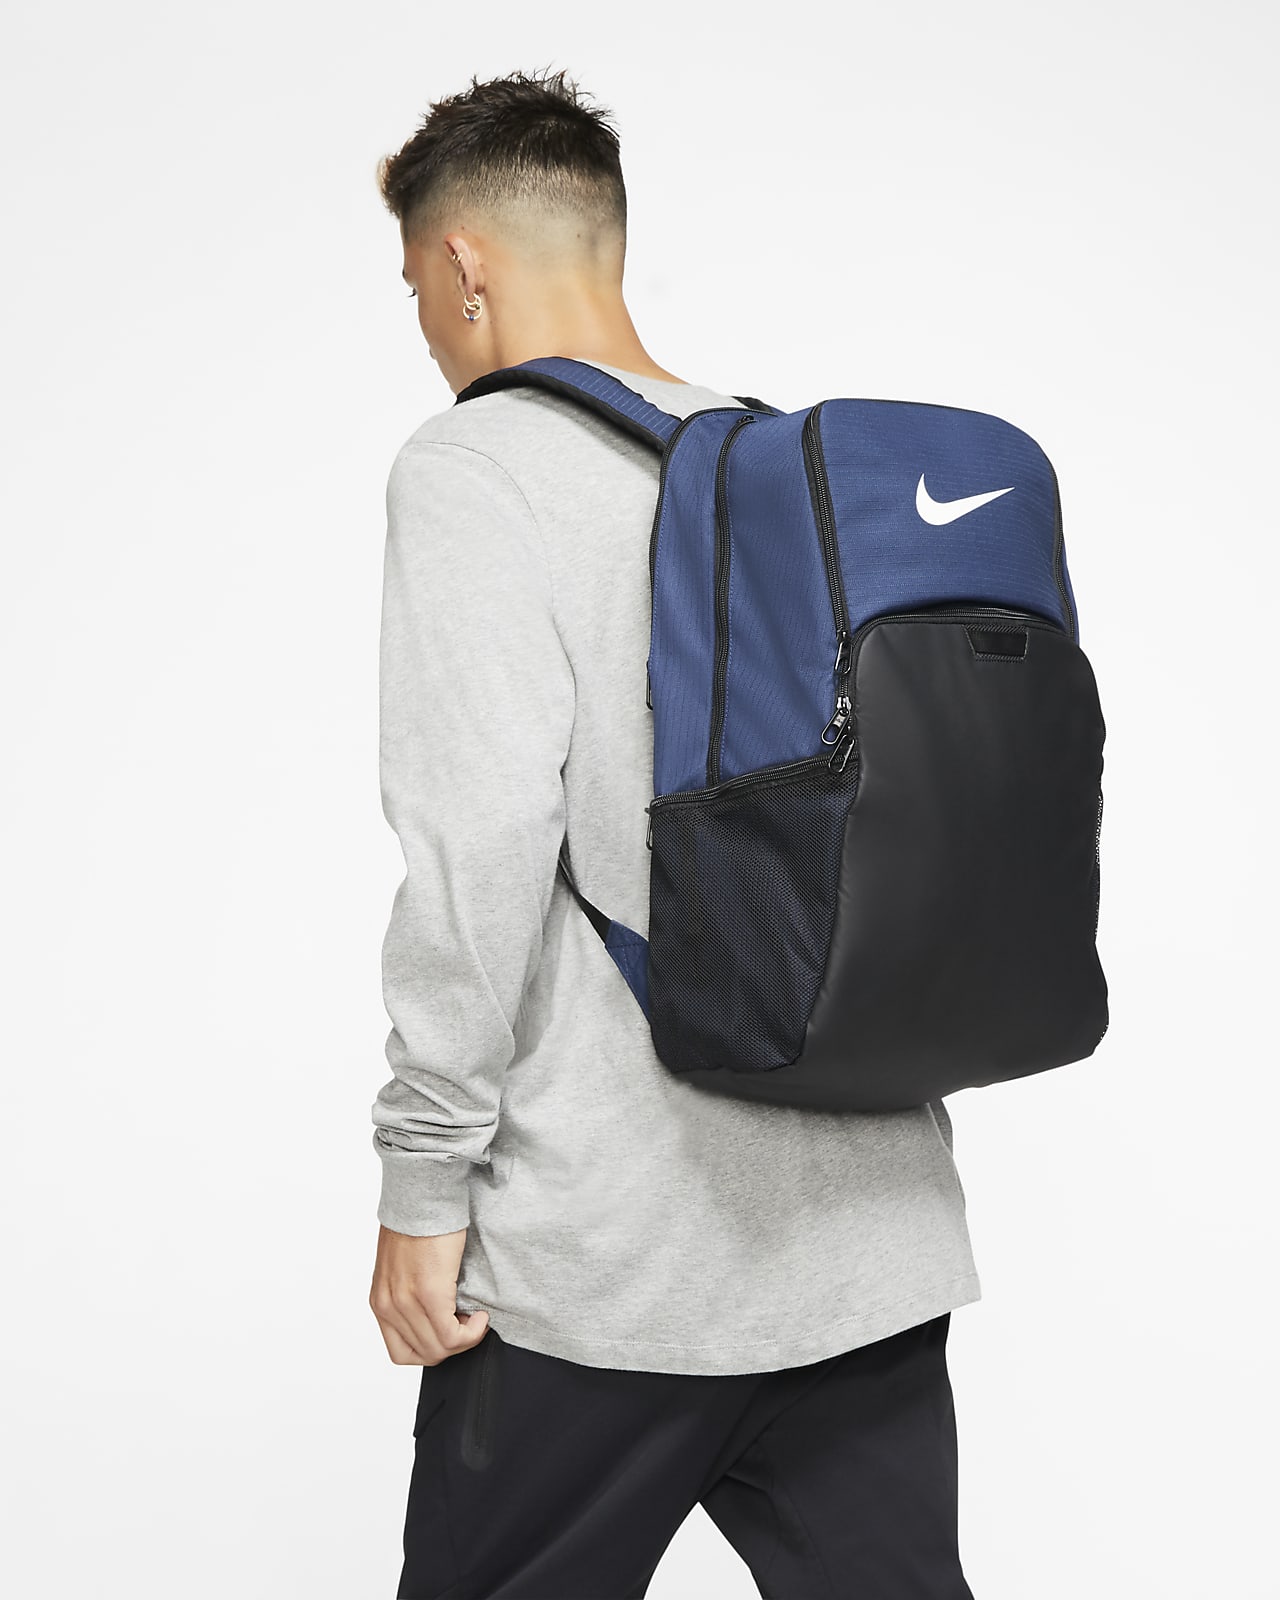 Nike Brasilia Training Backpack (Extra 